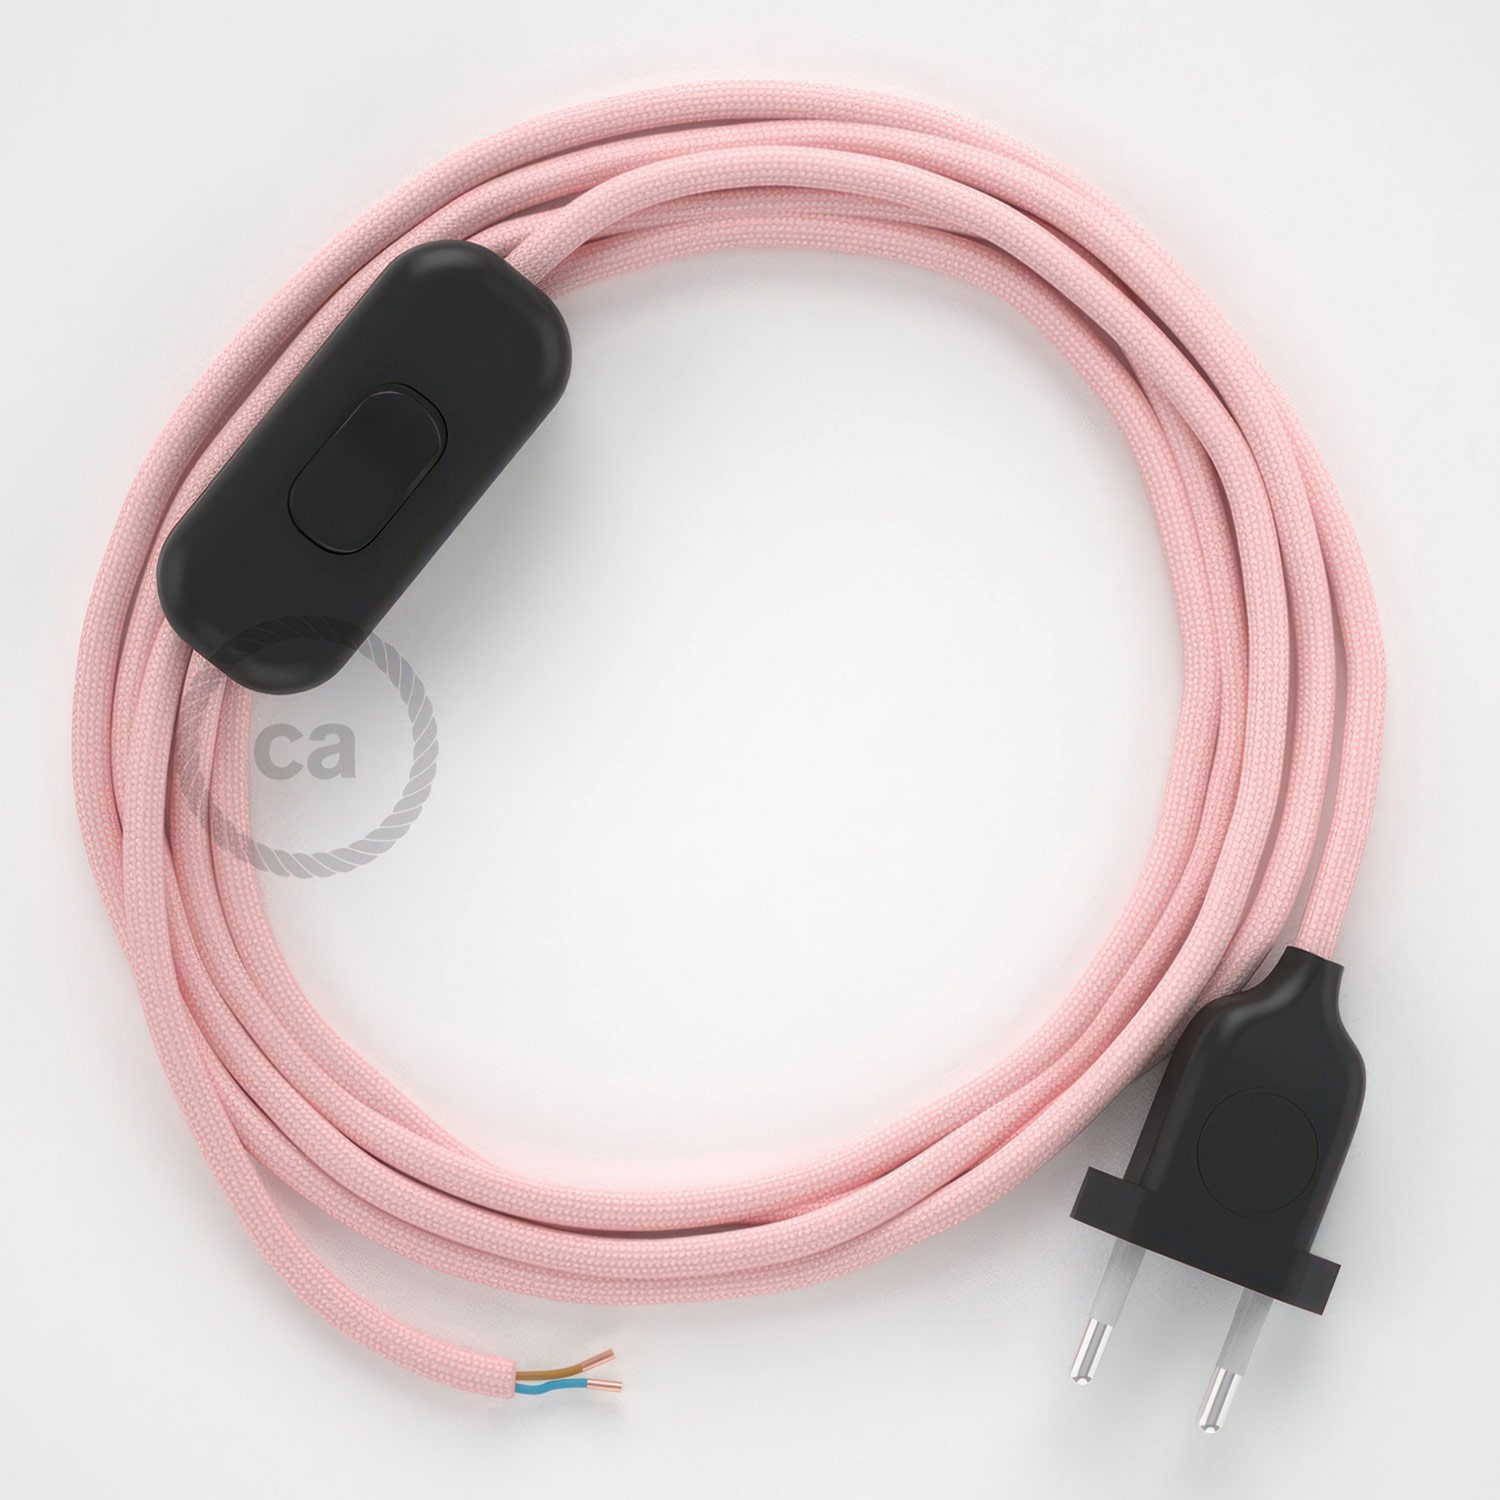 Cableado para lámpara, cable RM16 Efecto Seda Rosa Bebé 1,8m. Elige tu el color de la clavija y del interruptor!